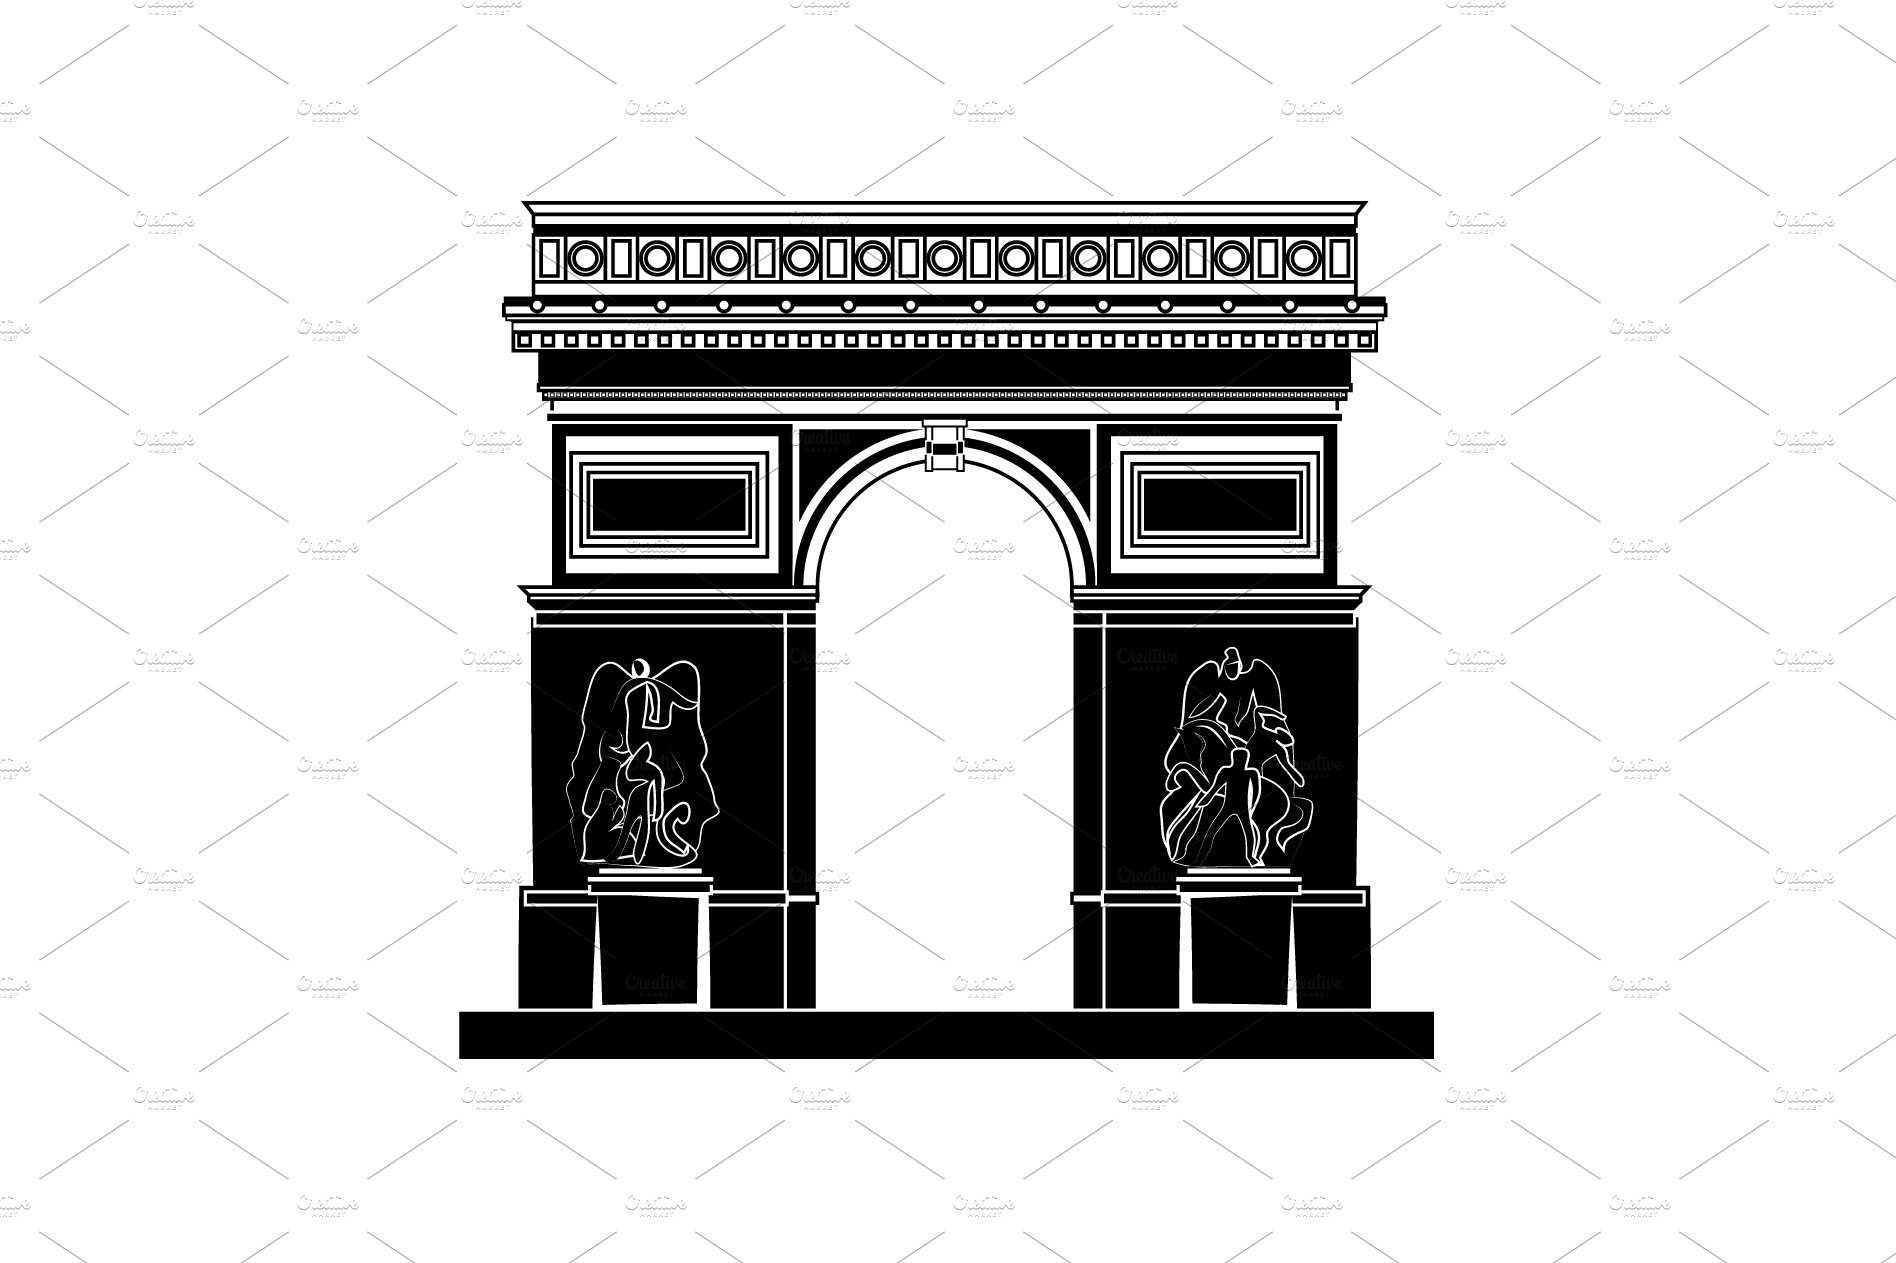 Arc de Triomphe in Paris cover image.